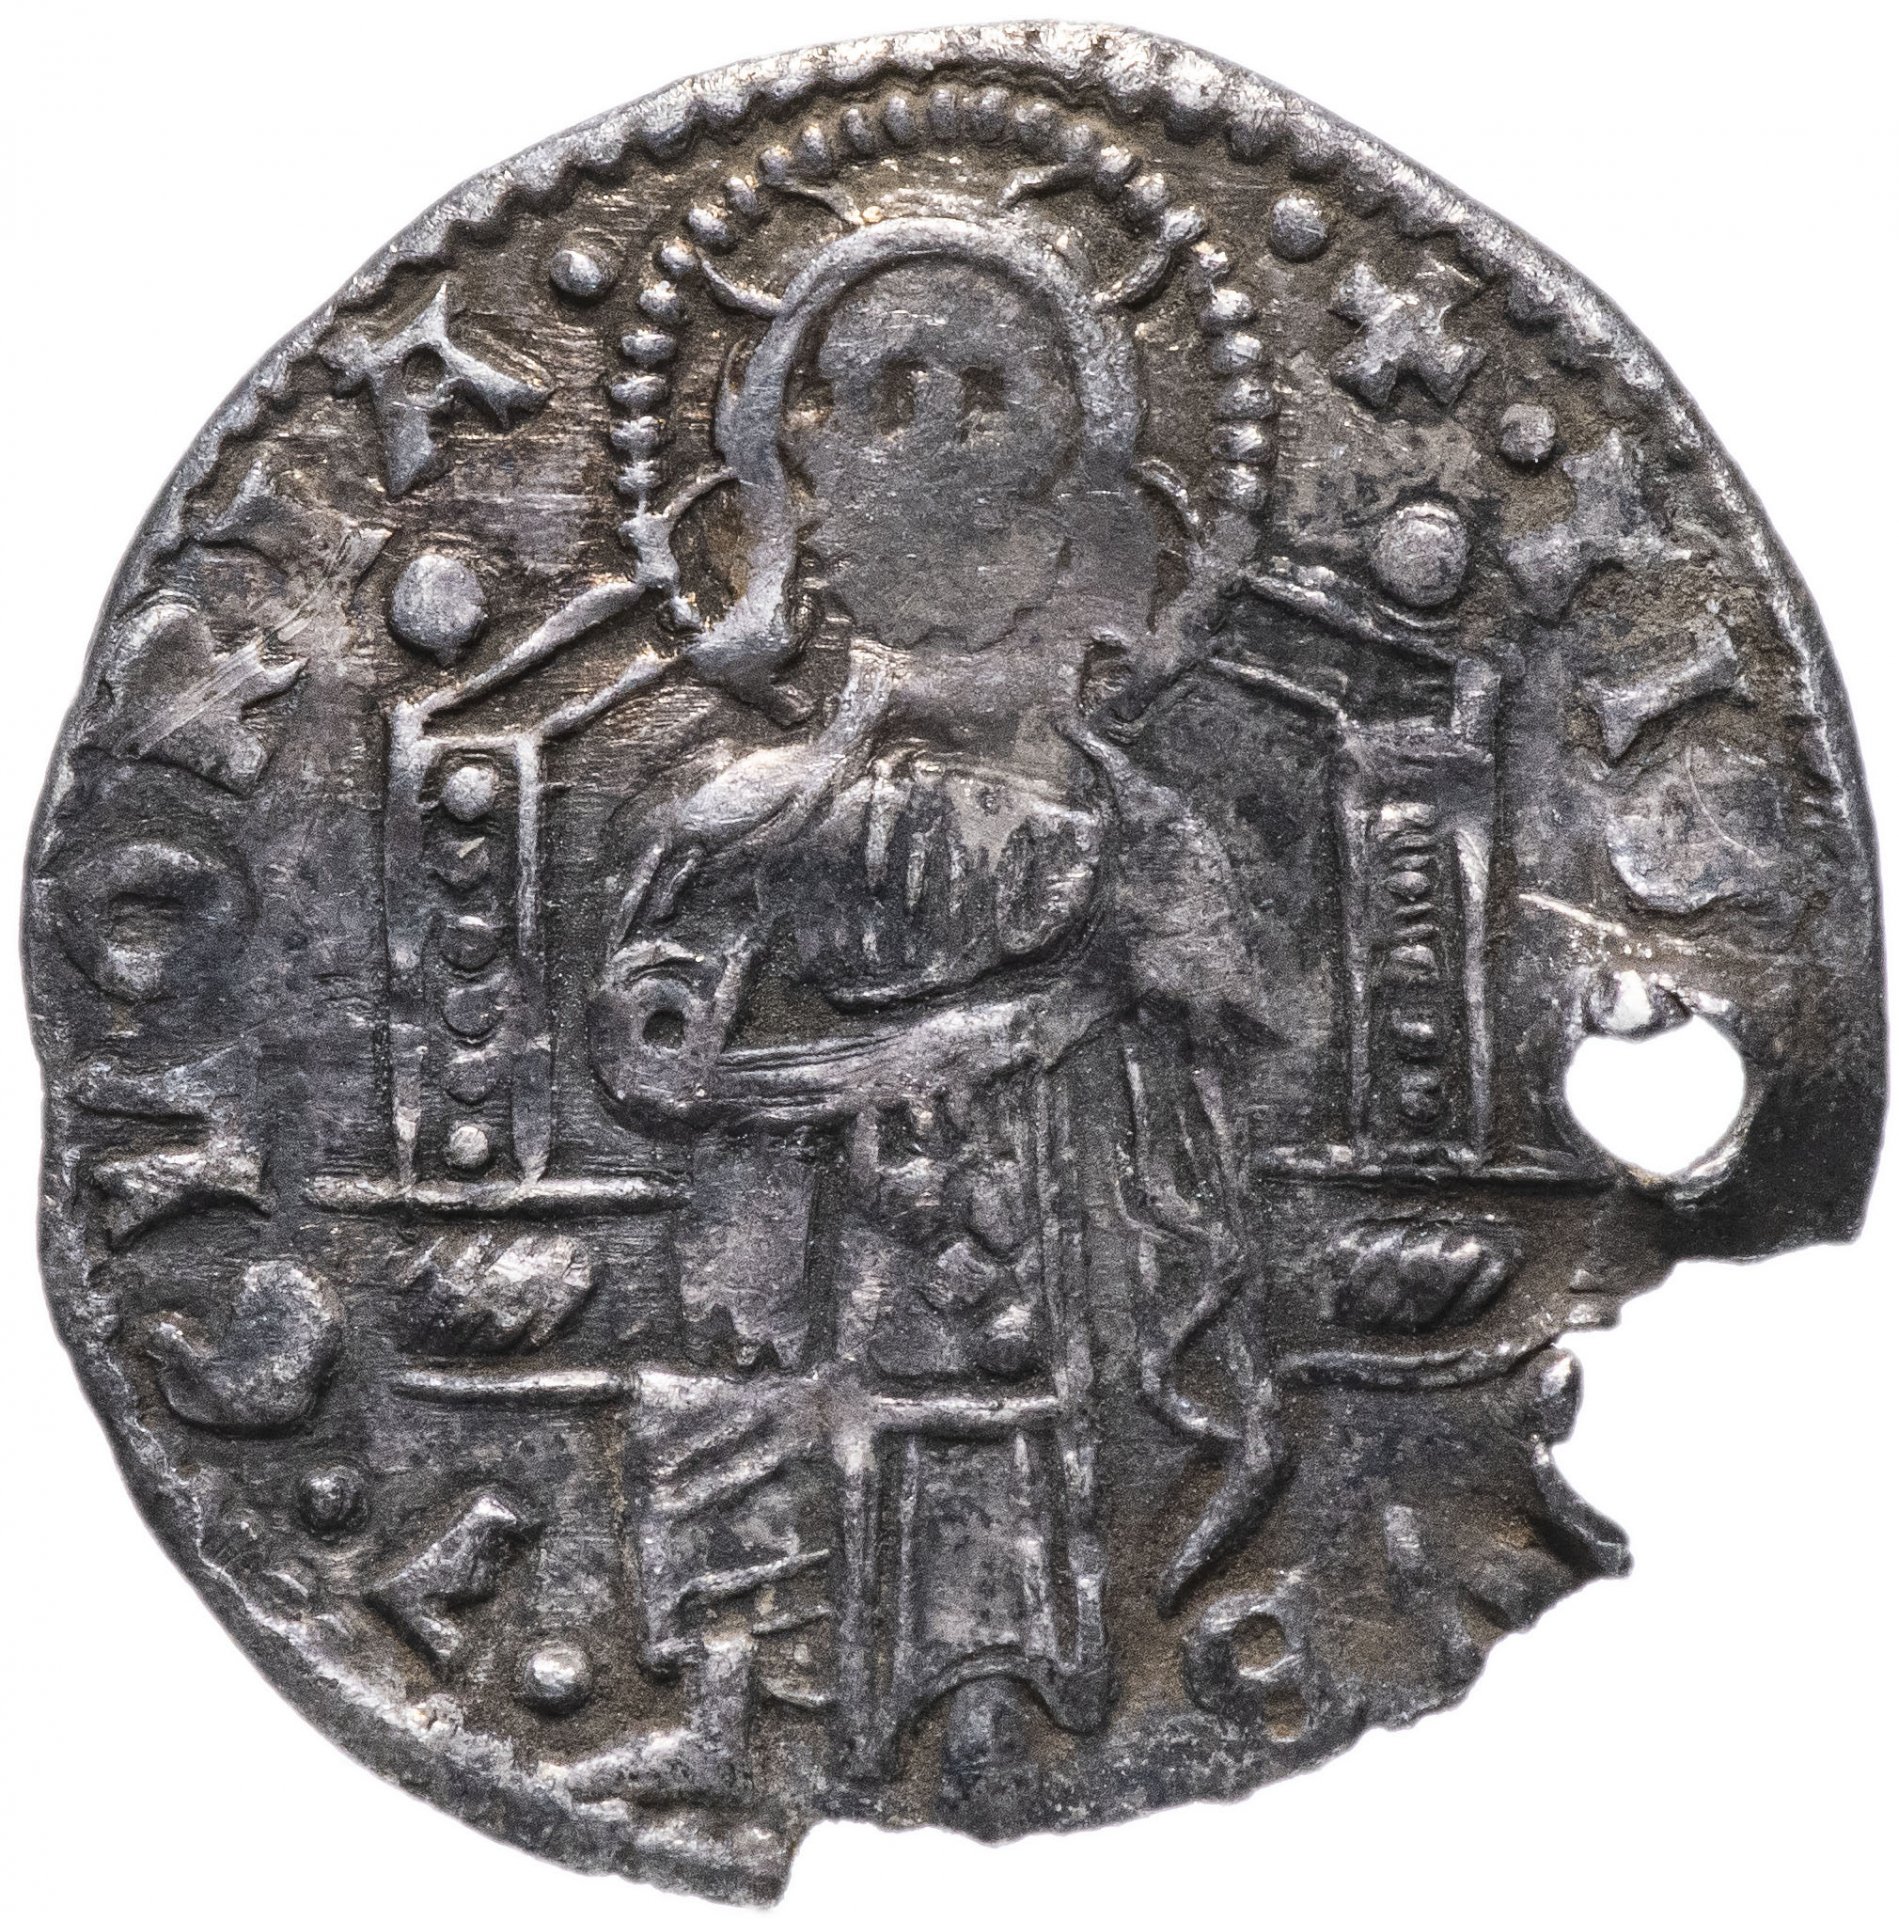 Рубль 1400 года. Монеты венецианской Республики. Гроссо монета. Монеты 1400 года. Монеты Венеции 15 века.